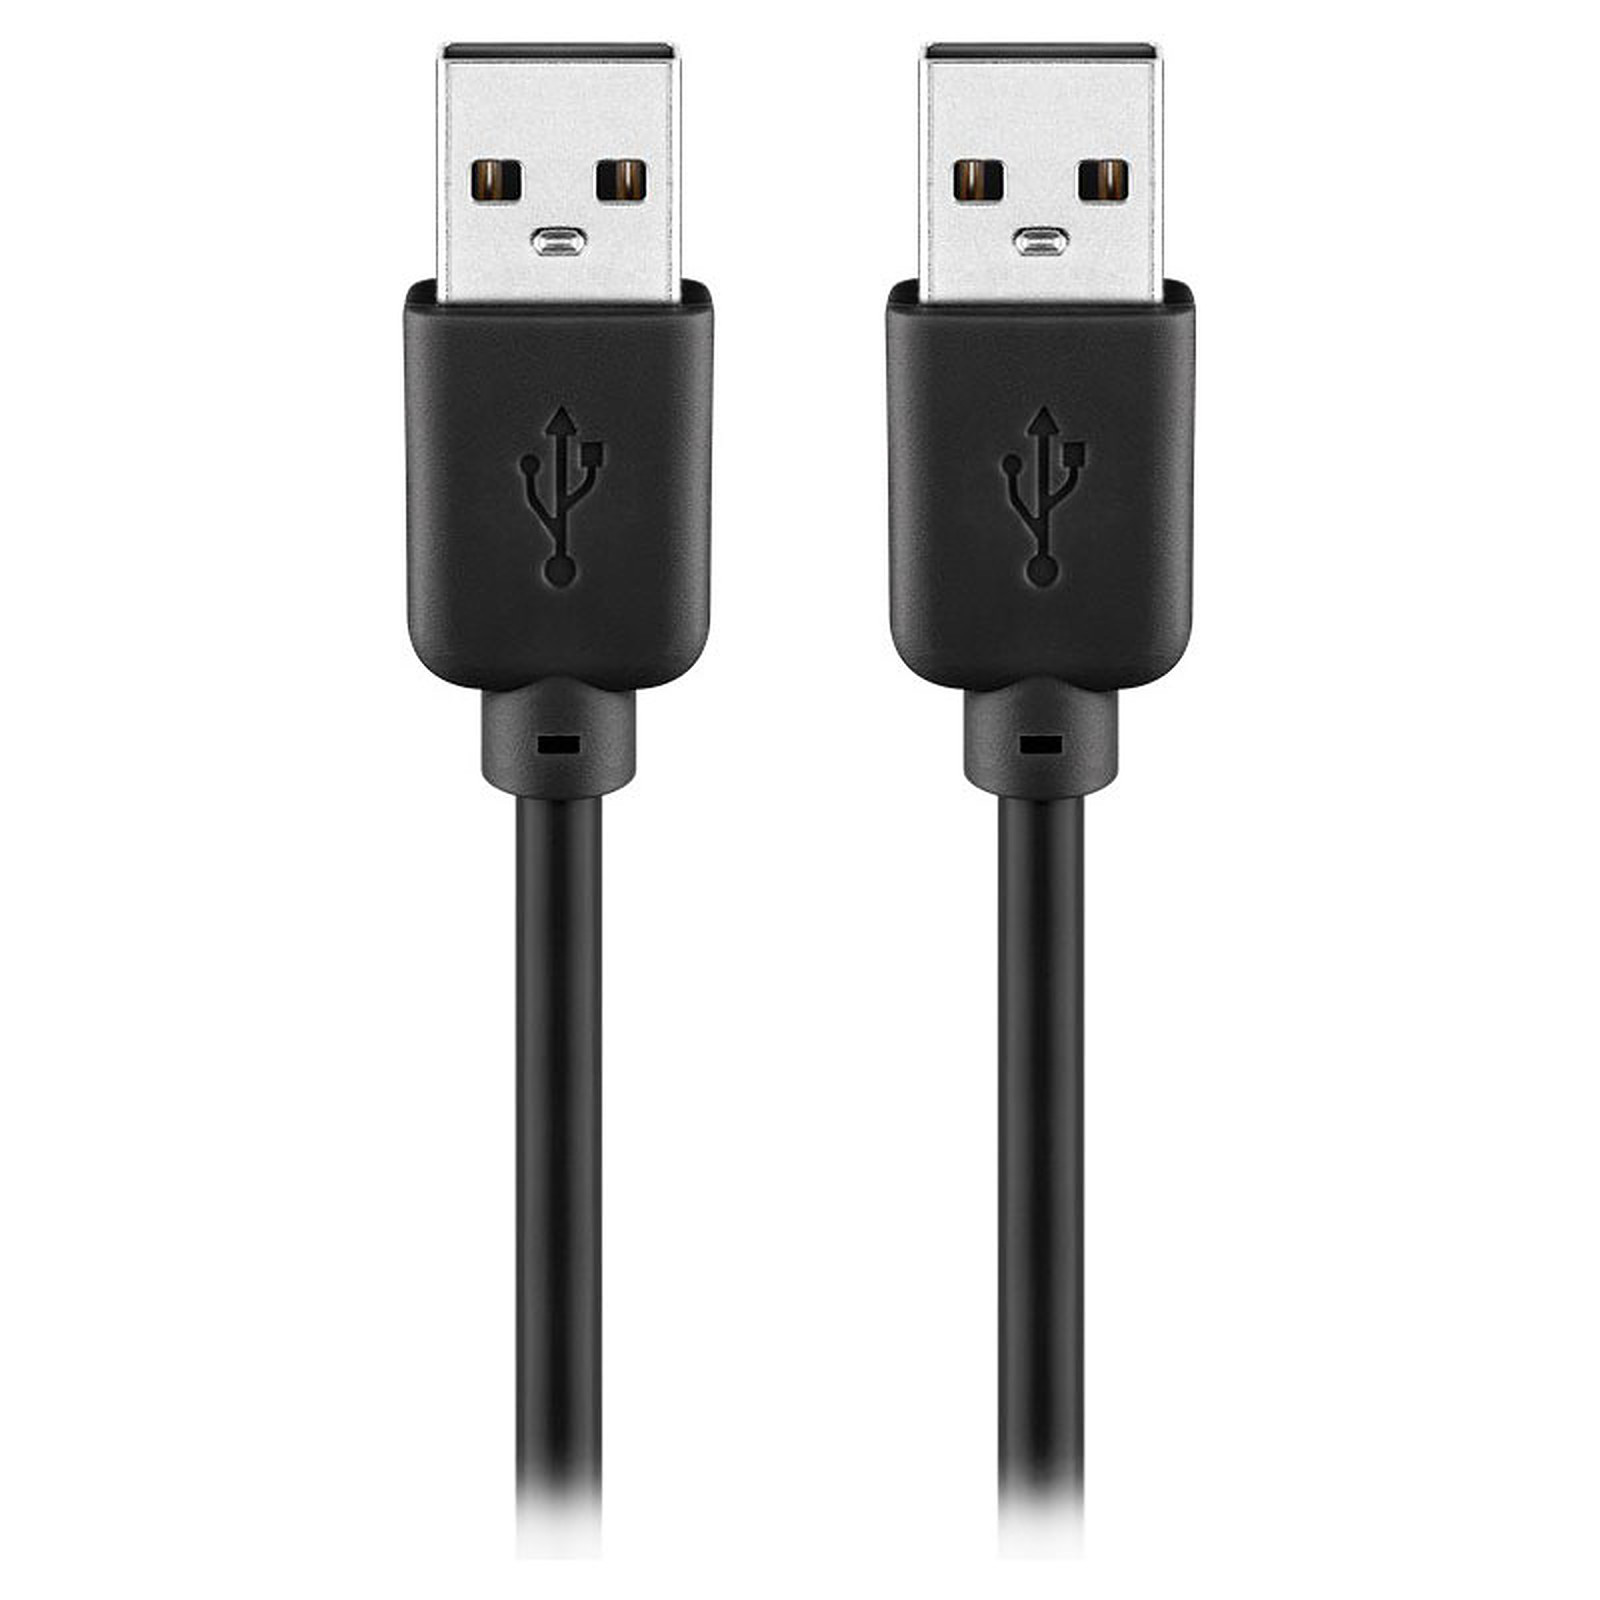 Cable USB 2.0 Type AA (Male/Male) - 2 m (Noir) - USB Generique